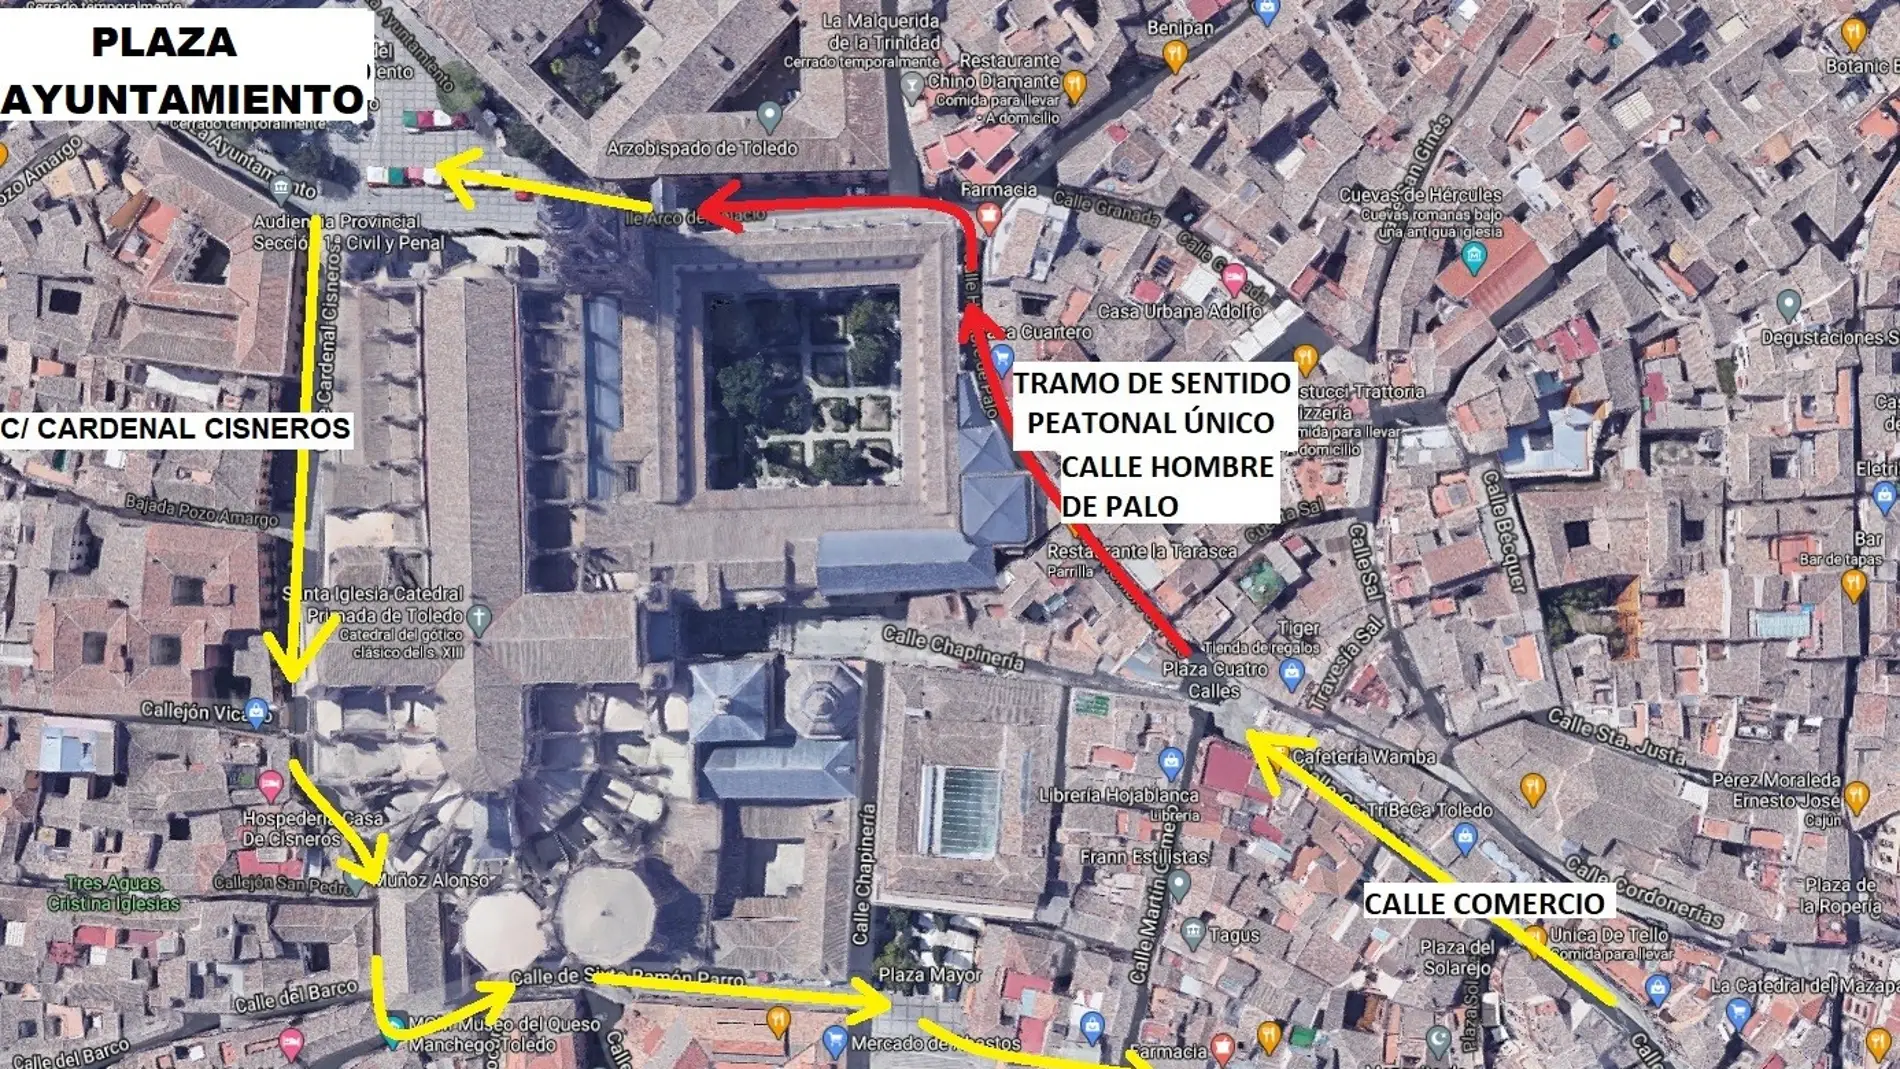 El recorrido entre Zocodover y Ayuntamiento en Toledo será de sentido único los días de más afluencia para evitar grandes aglomeraciones